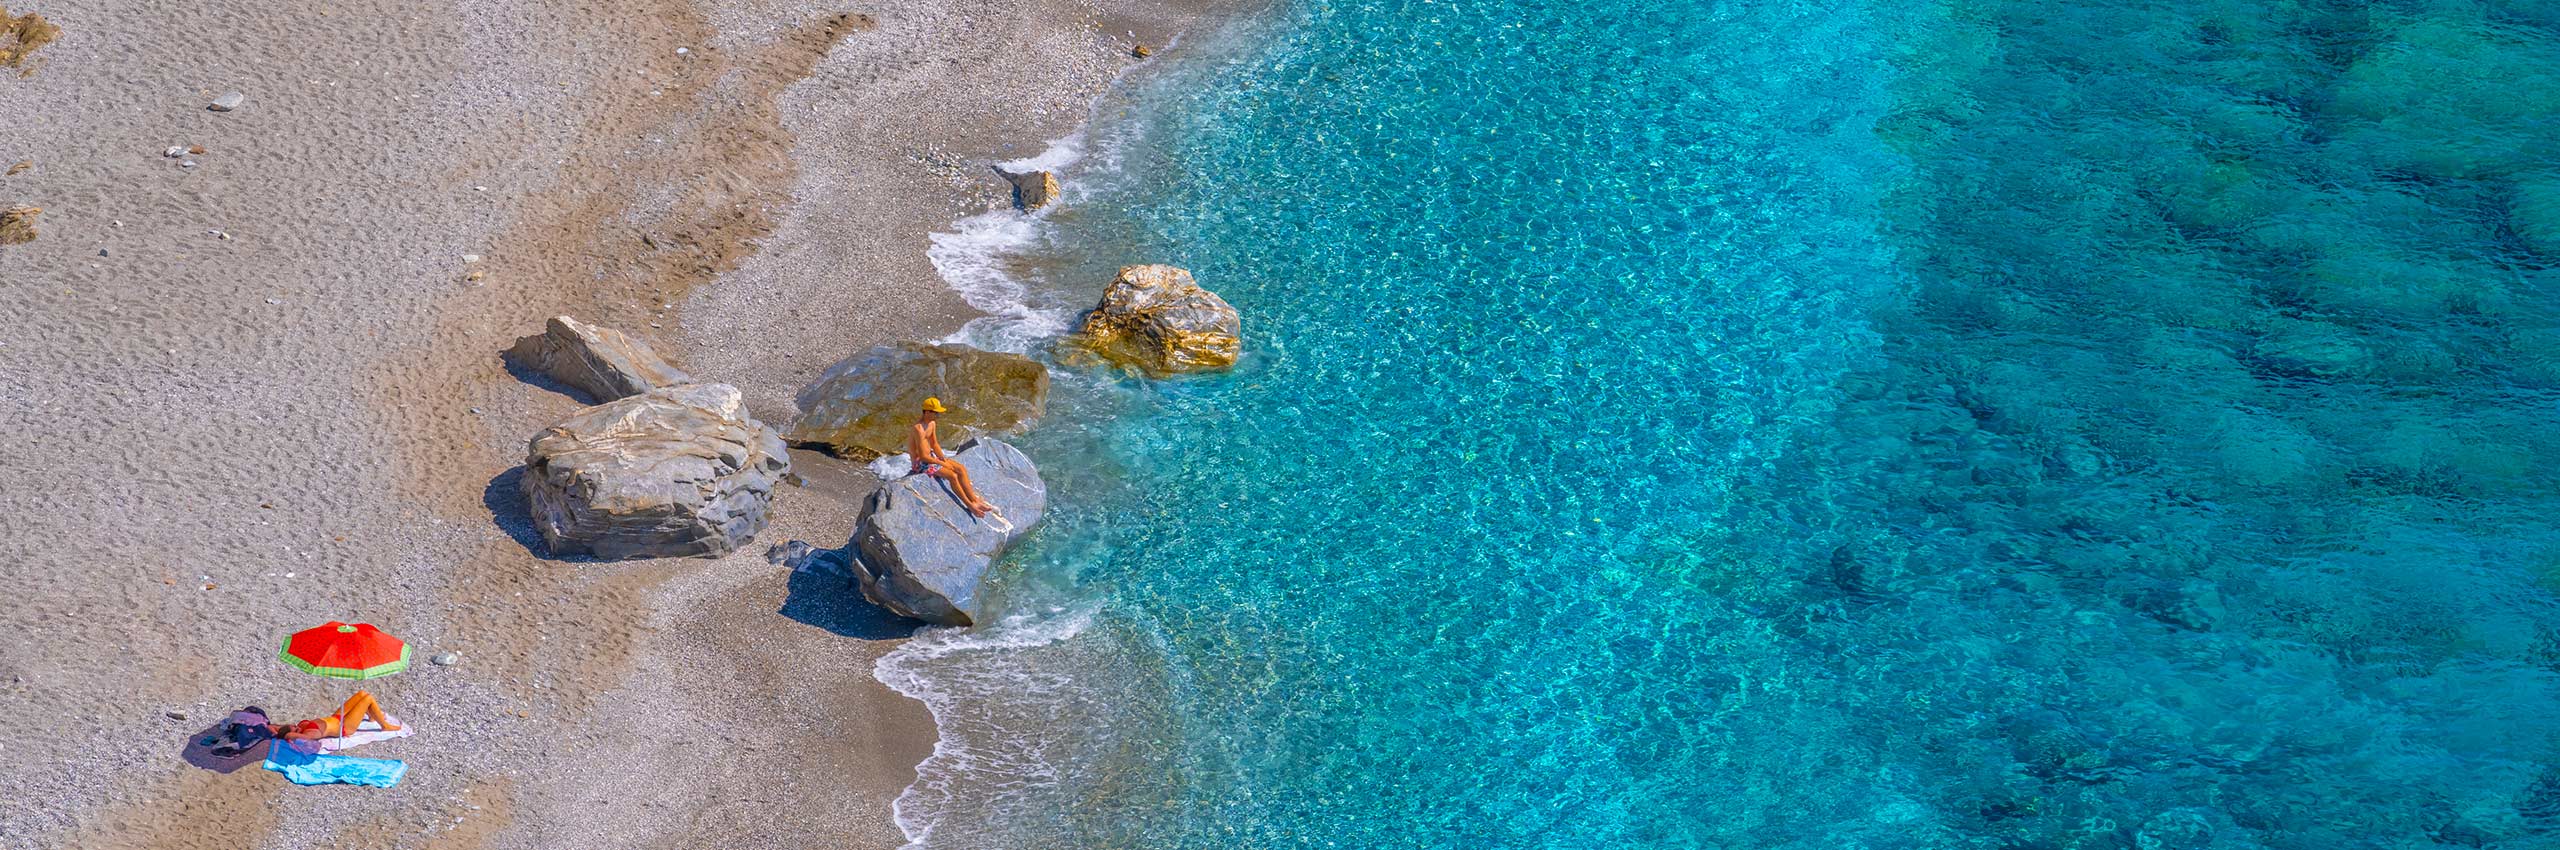 SIM-1237674 | Greece/Aegean islands, Cyclades, Folegandros island | © Giorgio Filippini/4Corners